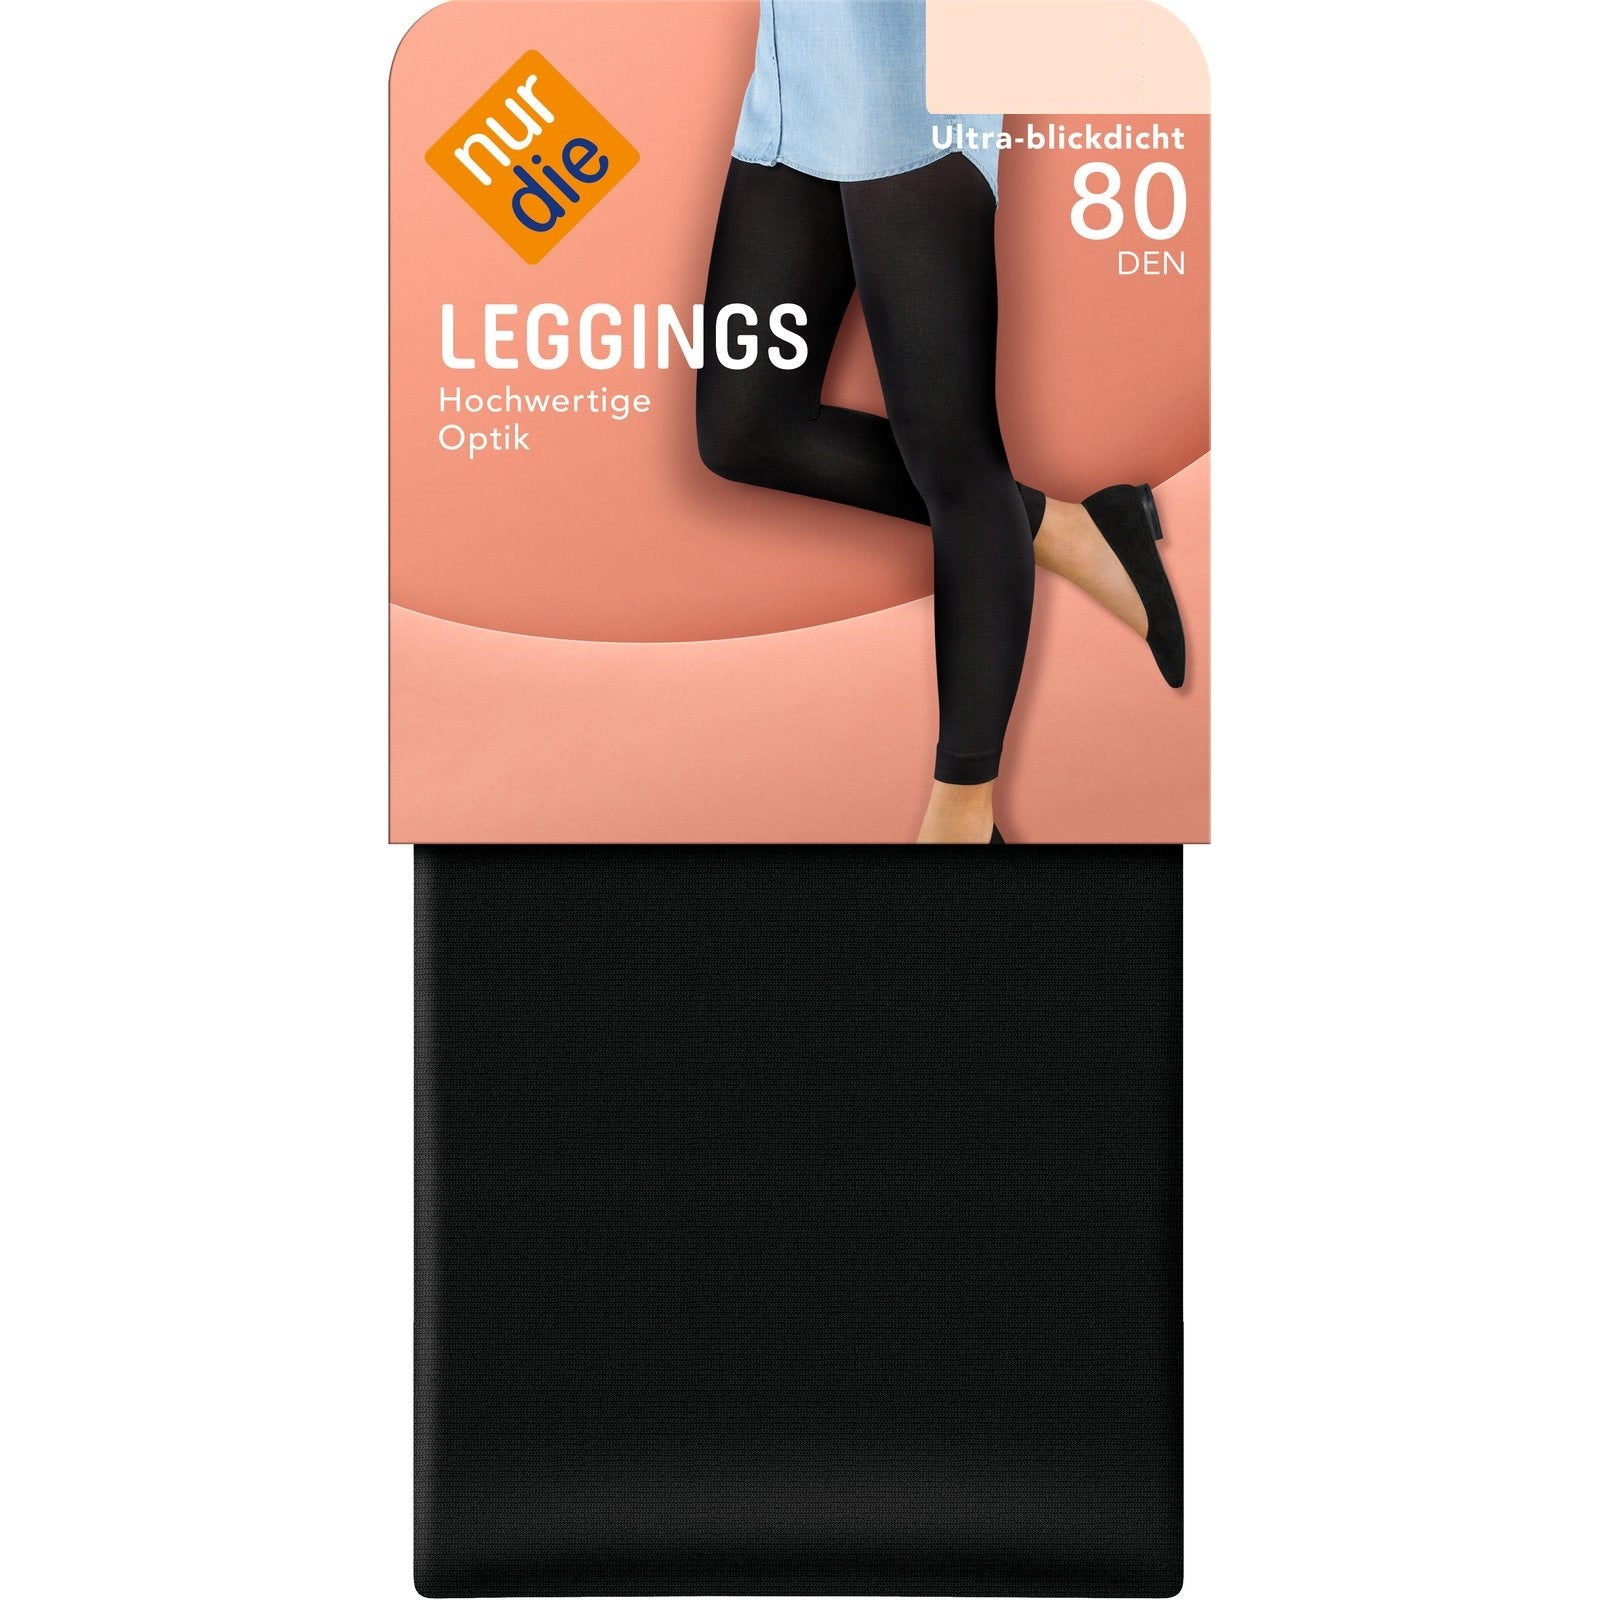 NurDie Leggings 80 Den Small (Case of 5)